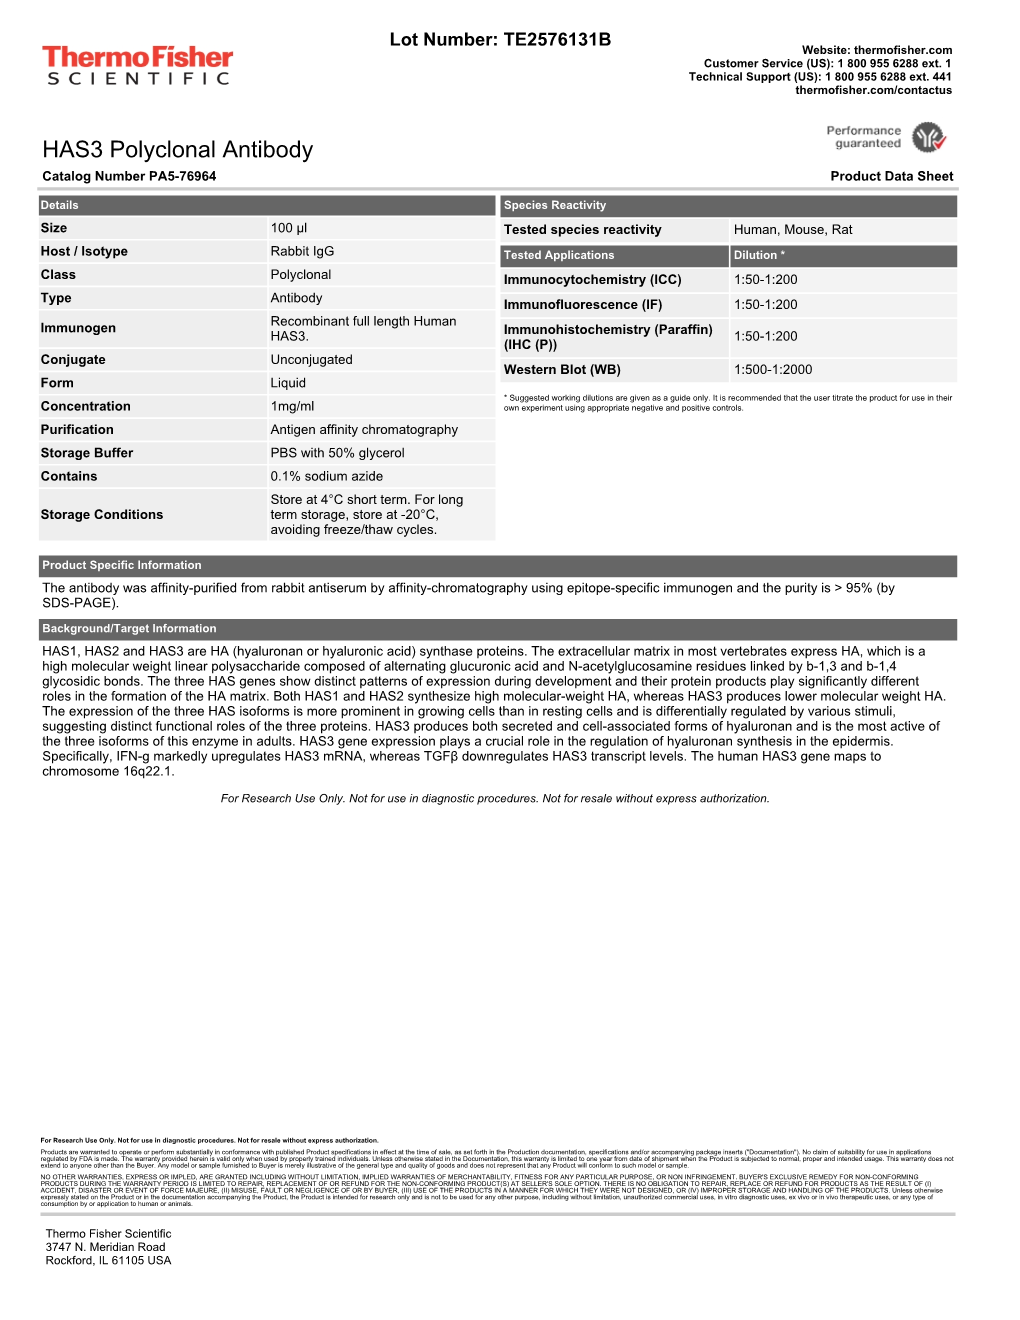 HAS3 Polyclonal Antibody Catalog Number PA5-76964 Product Data Sheet